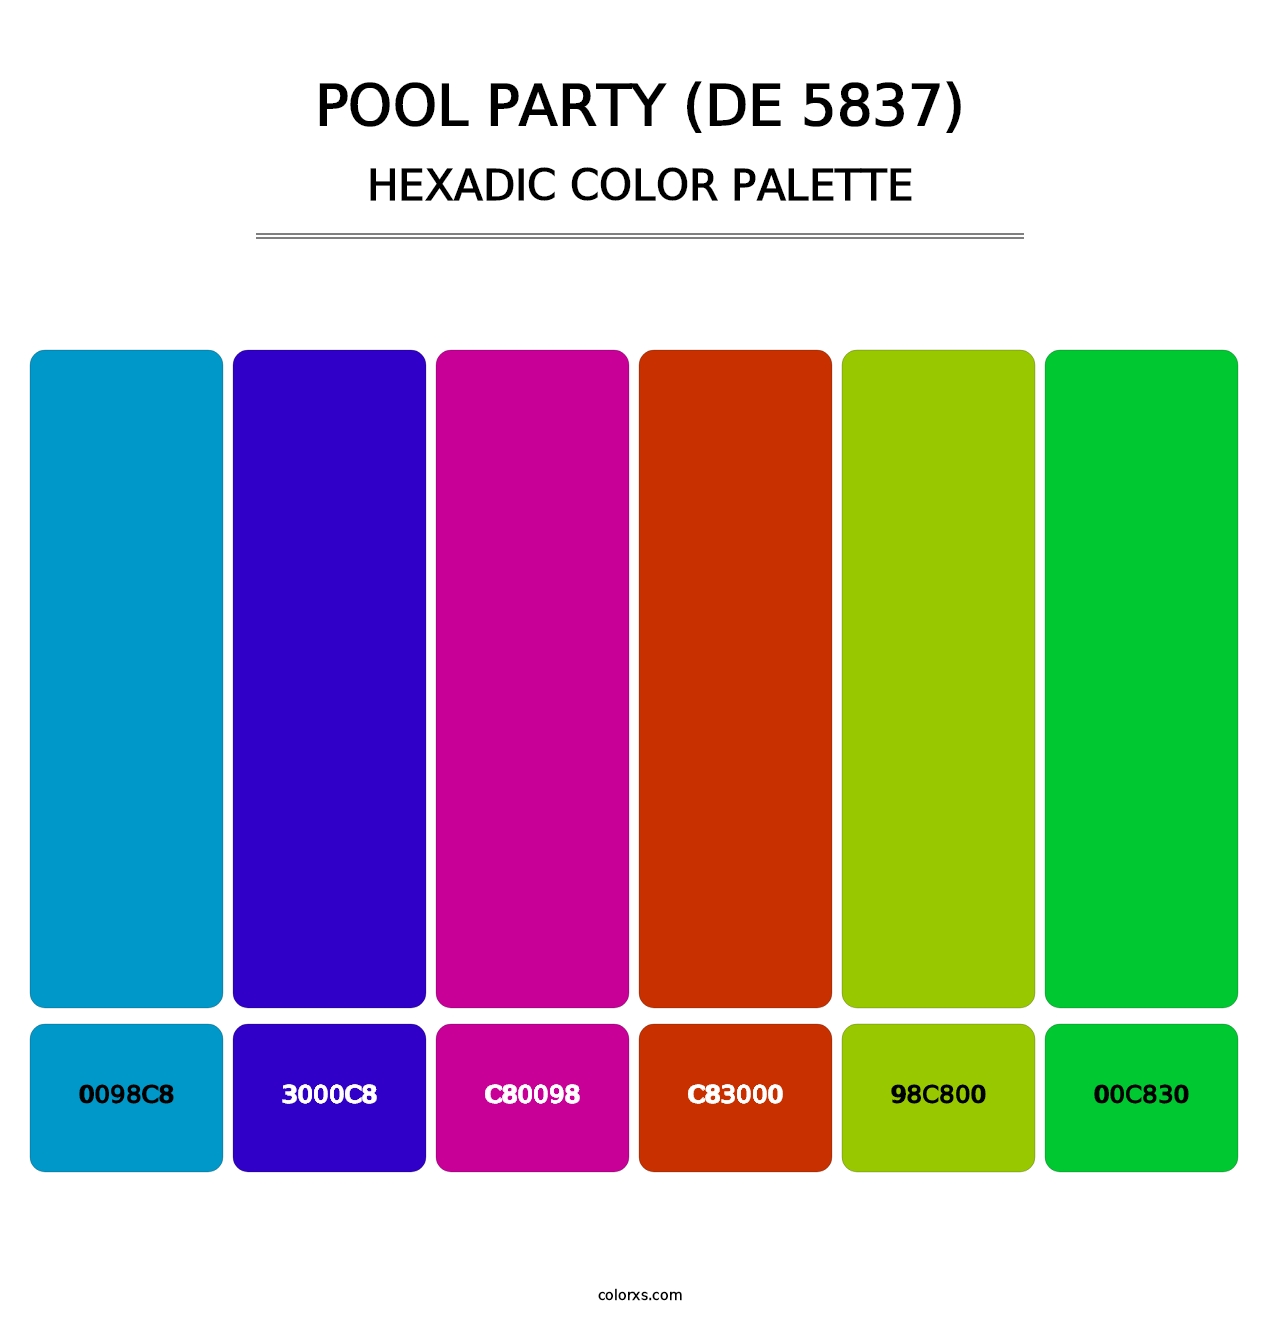 Pool Party (DE 5837) - Hexadic Color Palette